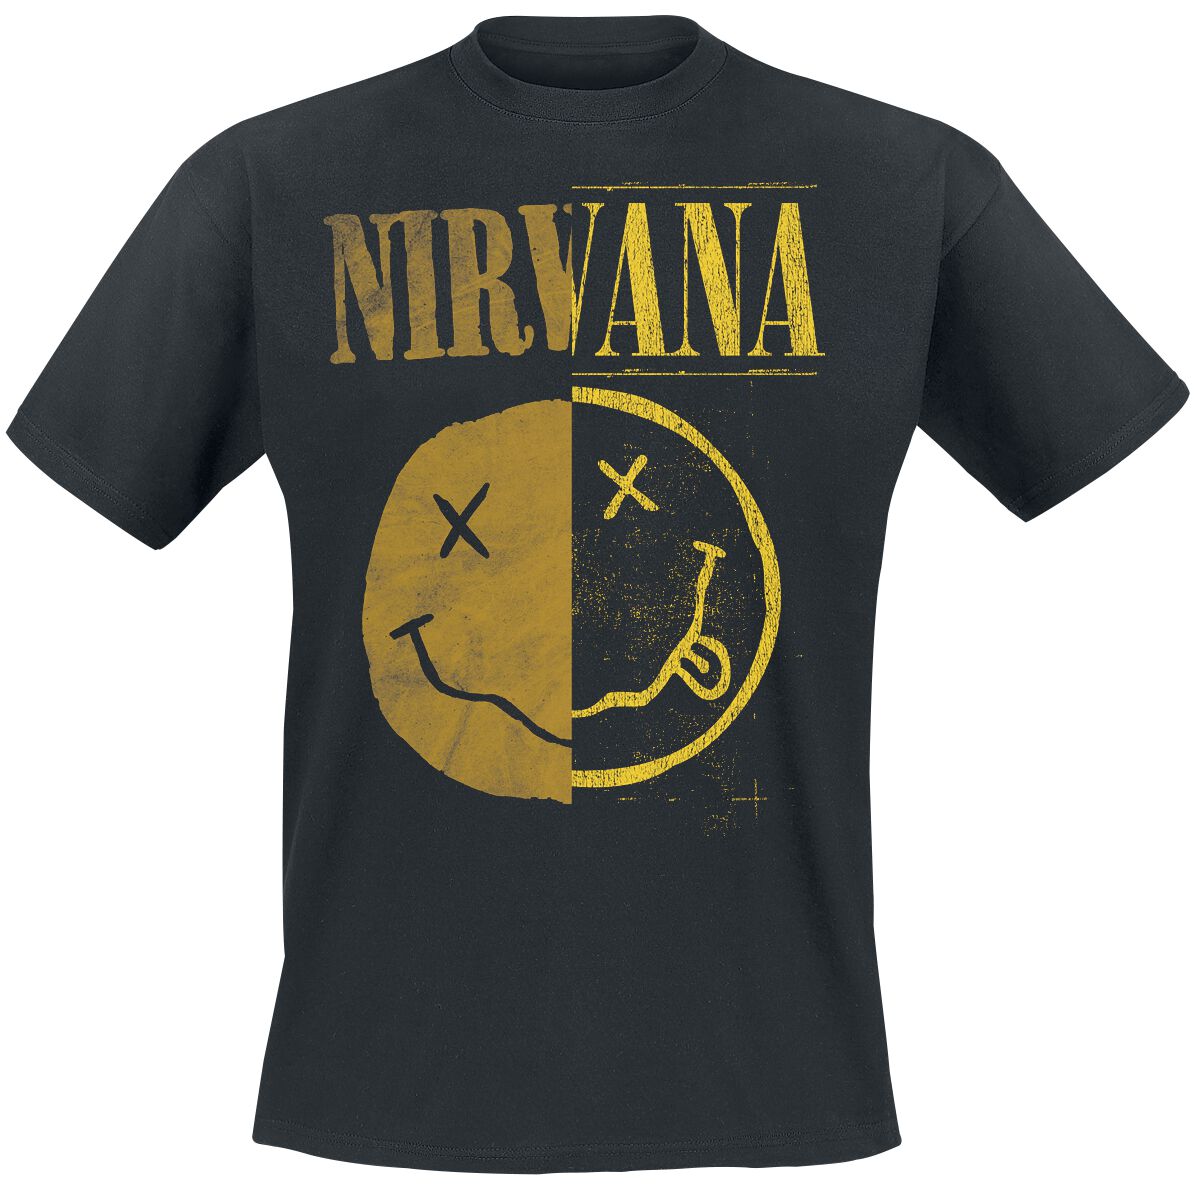 Nirvana T-Shirt - Spliced Smiley - S bis XXL - für Männer - Größe S - schwarz  - Lizenziertes Merchandise!